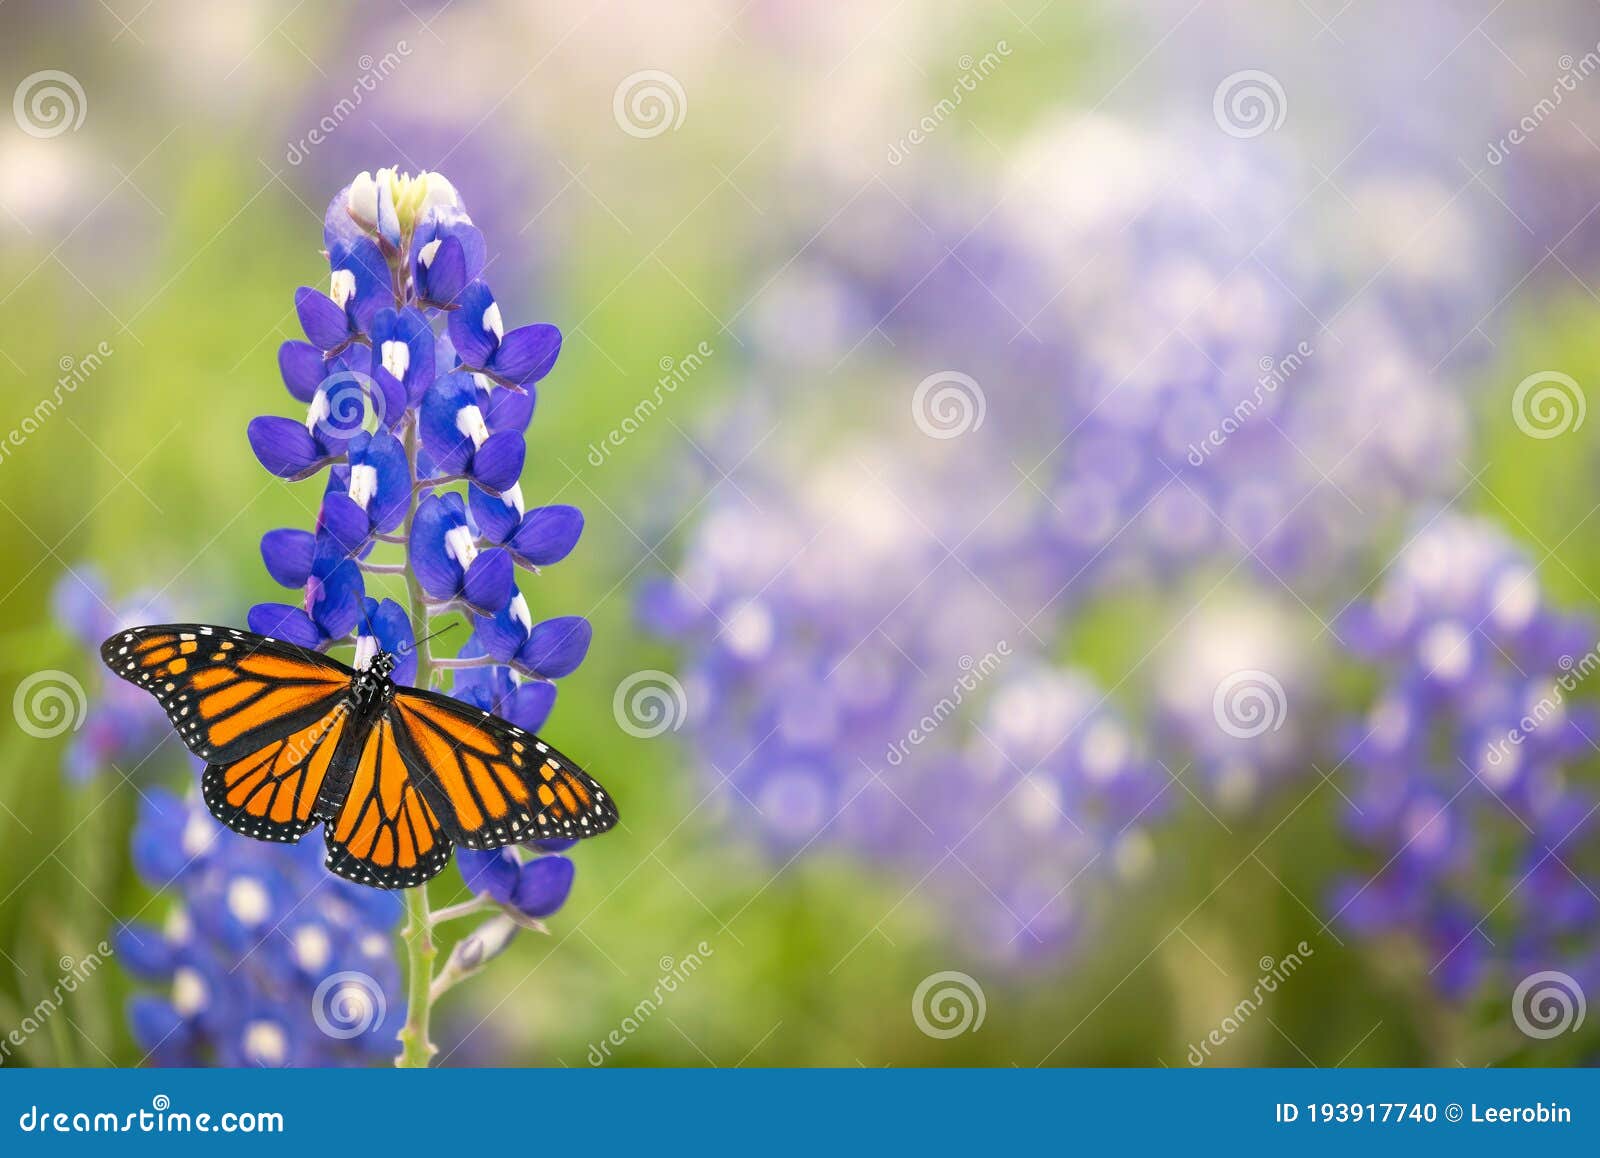 monarch butterfly on texas bluebonnet flower